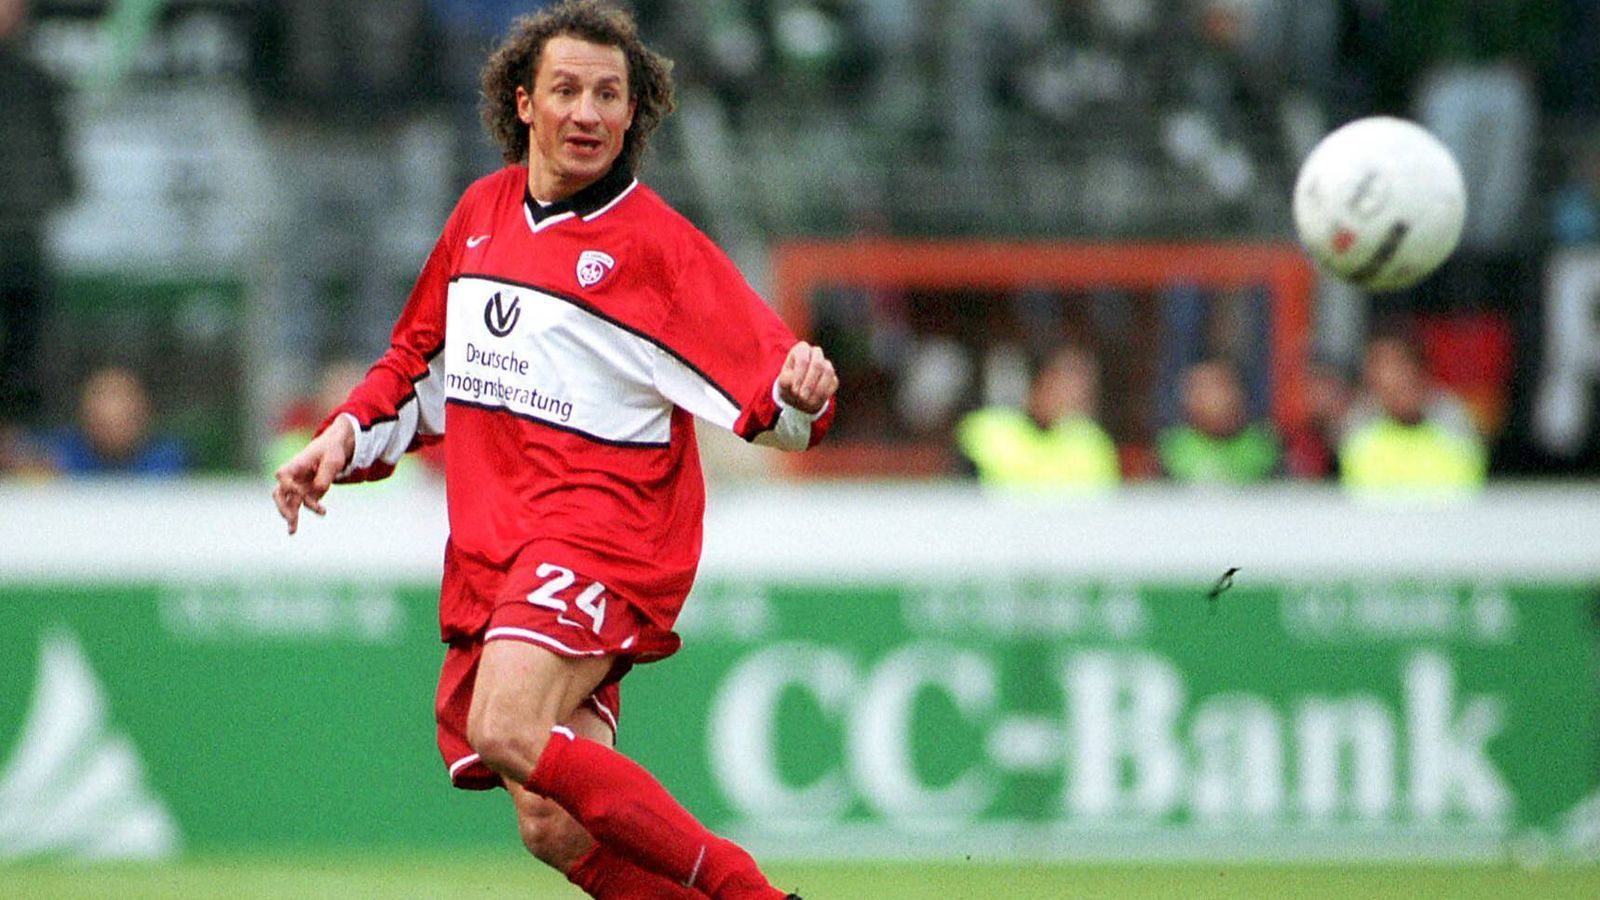 
                <strong>Harry Koch</strong><br>
                Zugegeben, über Rheinland-Pfalz hinaus war Harry Koch beileibe kein Star. Bei den Fans des 1. FC Kaiserslautern galt der Abwehrspieler mit der lockigen Haarpracht allerdings als Publikumsliebling. Kein Wunder, schließlich war Koch dabei, als Lautern als Aufsteiger direkt zum Meistertitel marschierte. 2003 wechselte er schließlich zu Eintracht Trier. Insgesamt kam Harry Koch auf 187 Spiele in der 1. und 76 Spiele in der 2. Bundesliga
              